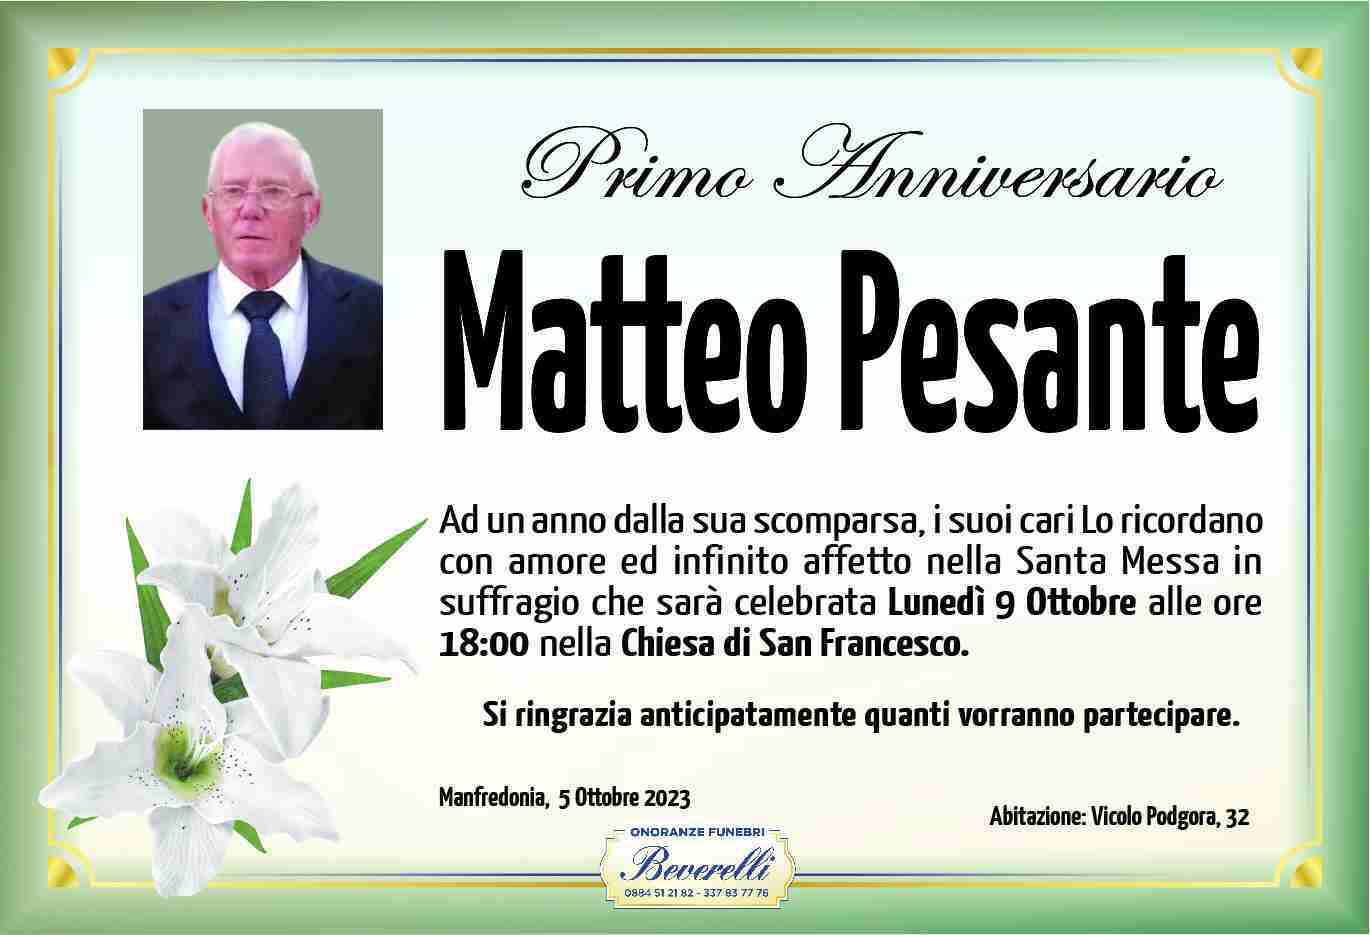 Matteo Pesante